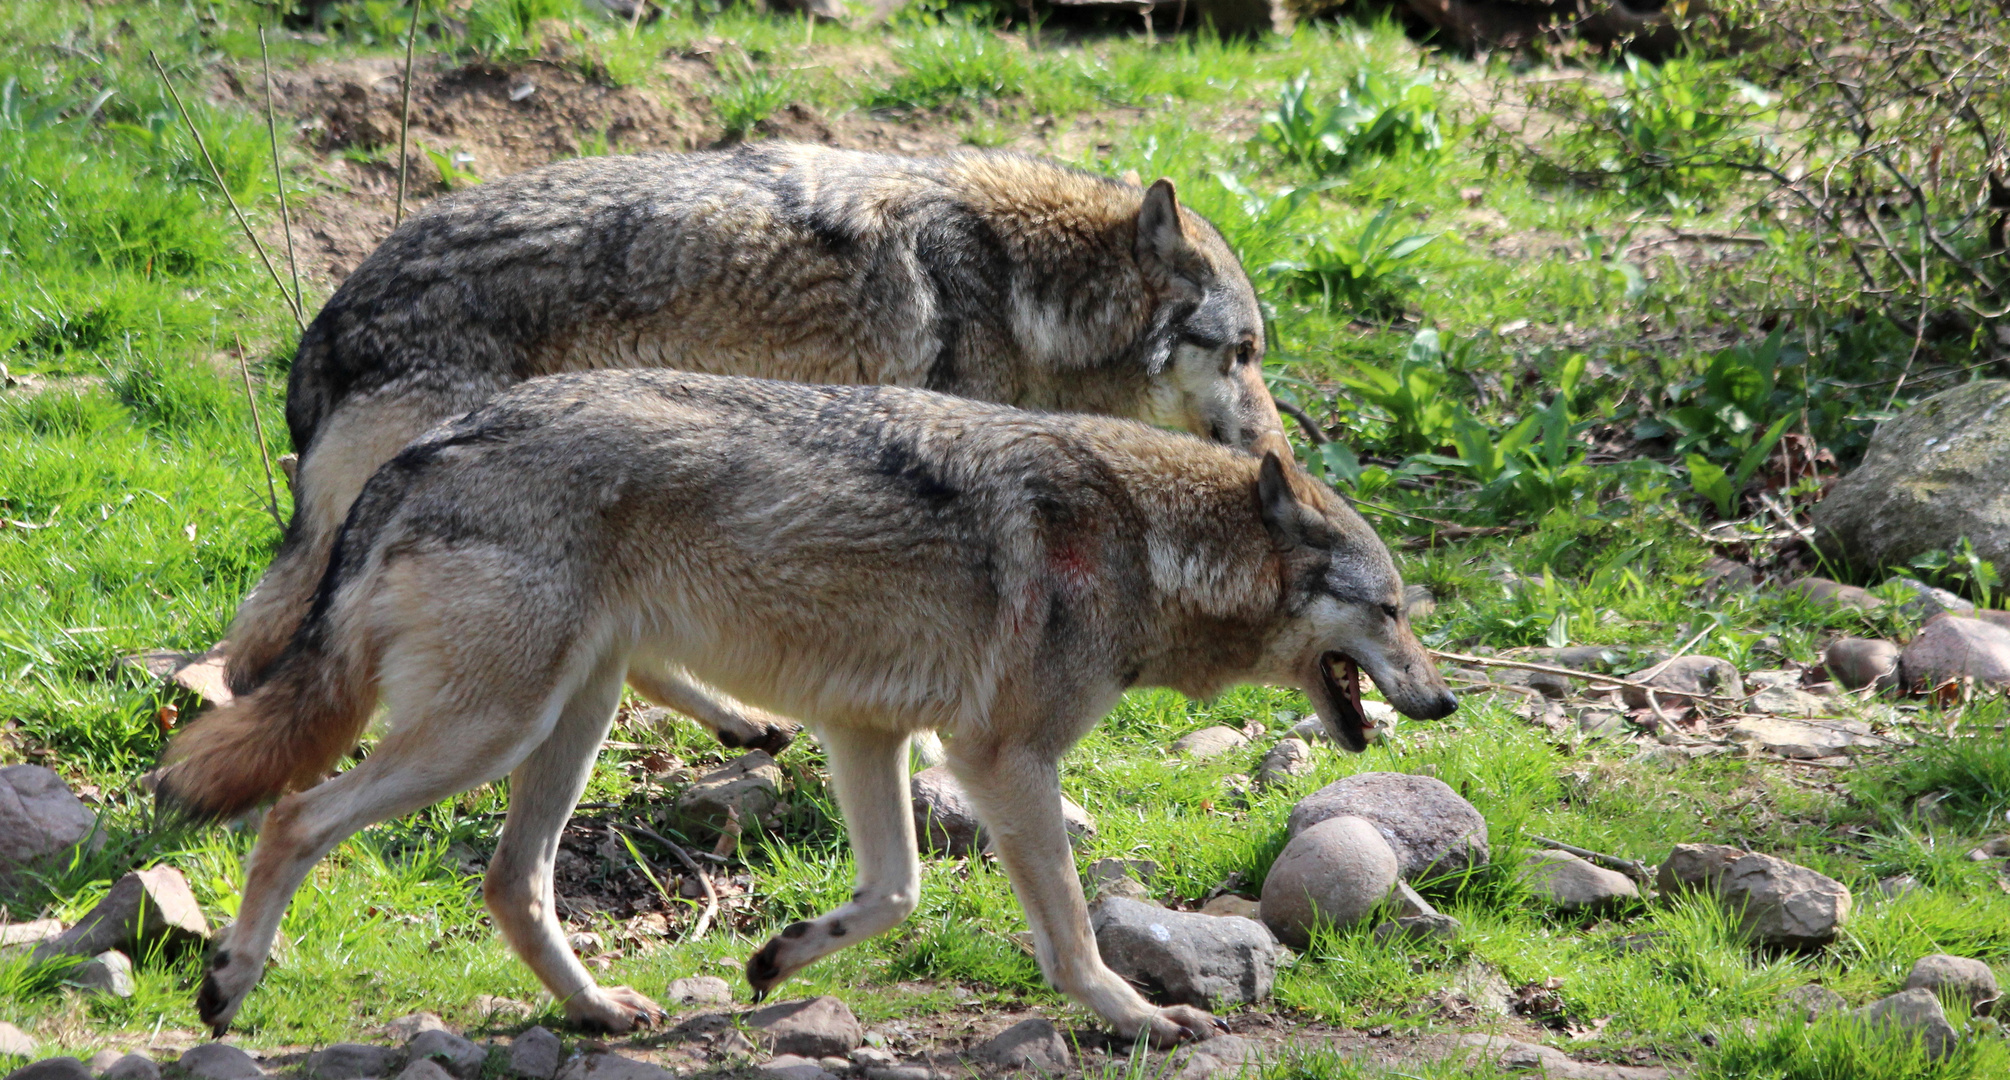 Worüber sich diese beiden Wölfe wohl unterhalten?